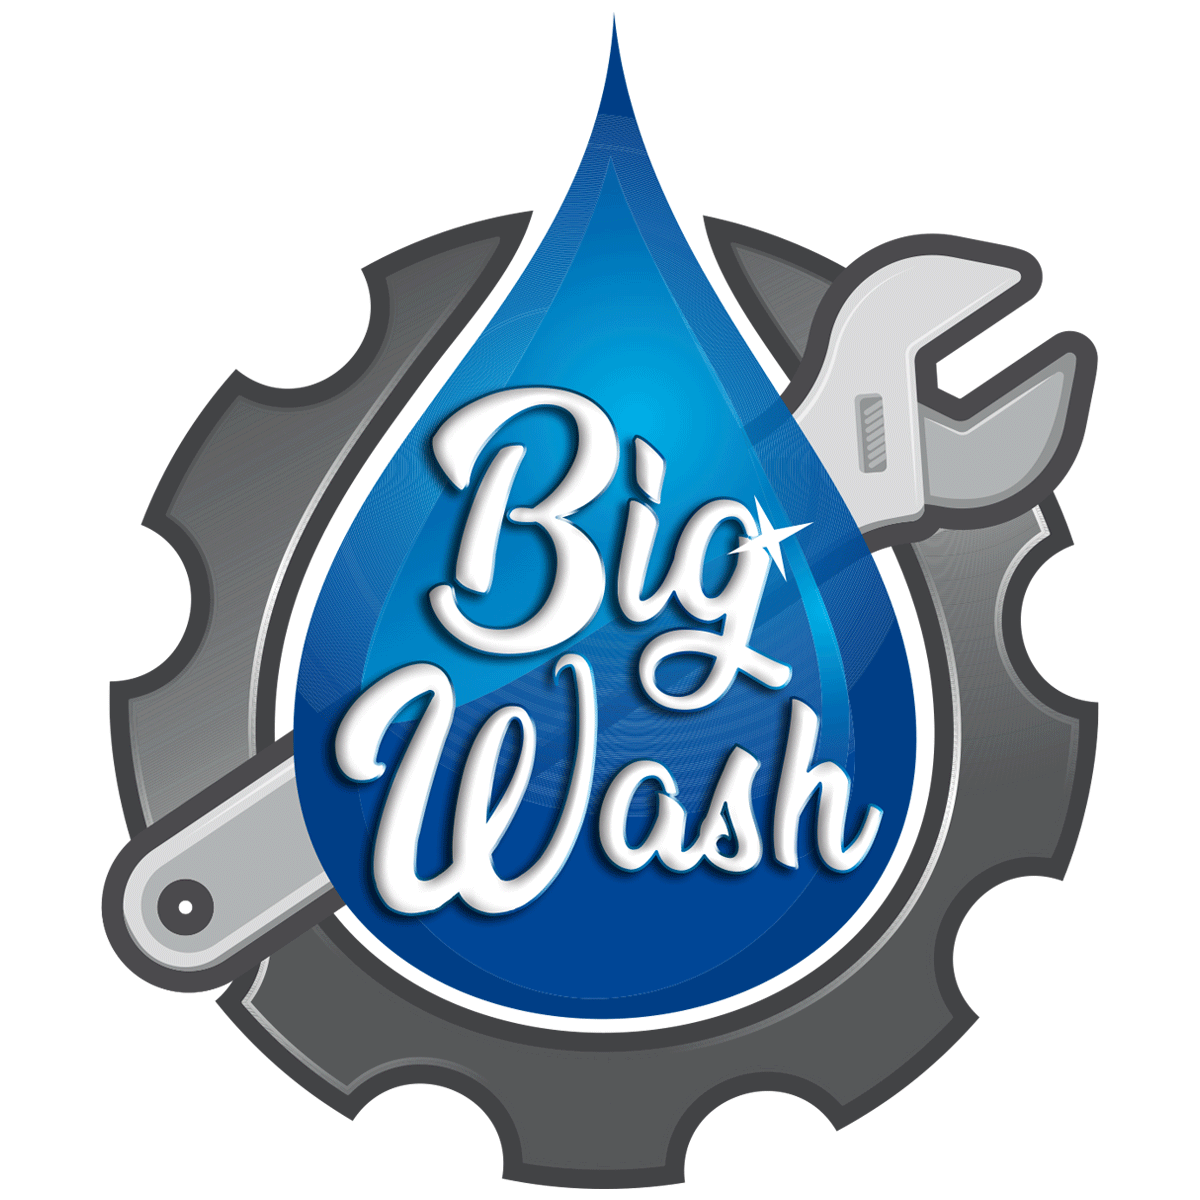 Big Wash - Bonifica cisterne alimentari - Lavaggi interni ed esterni veicoli